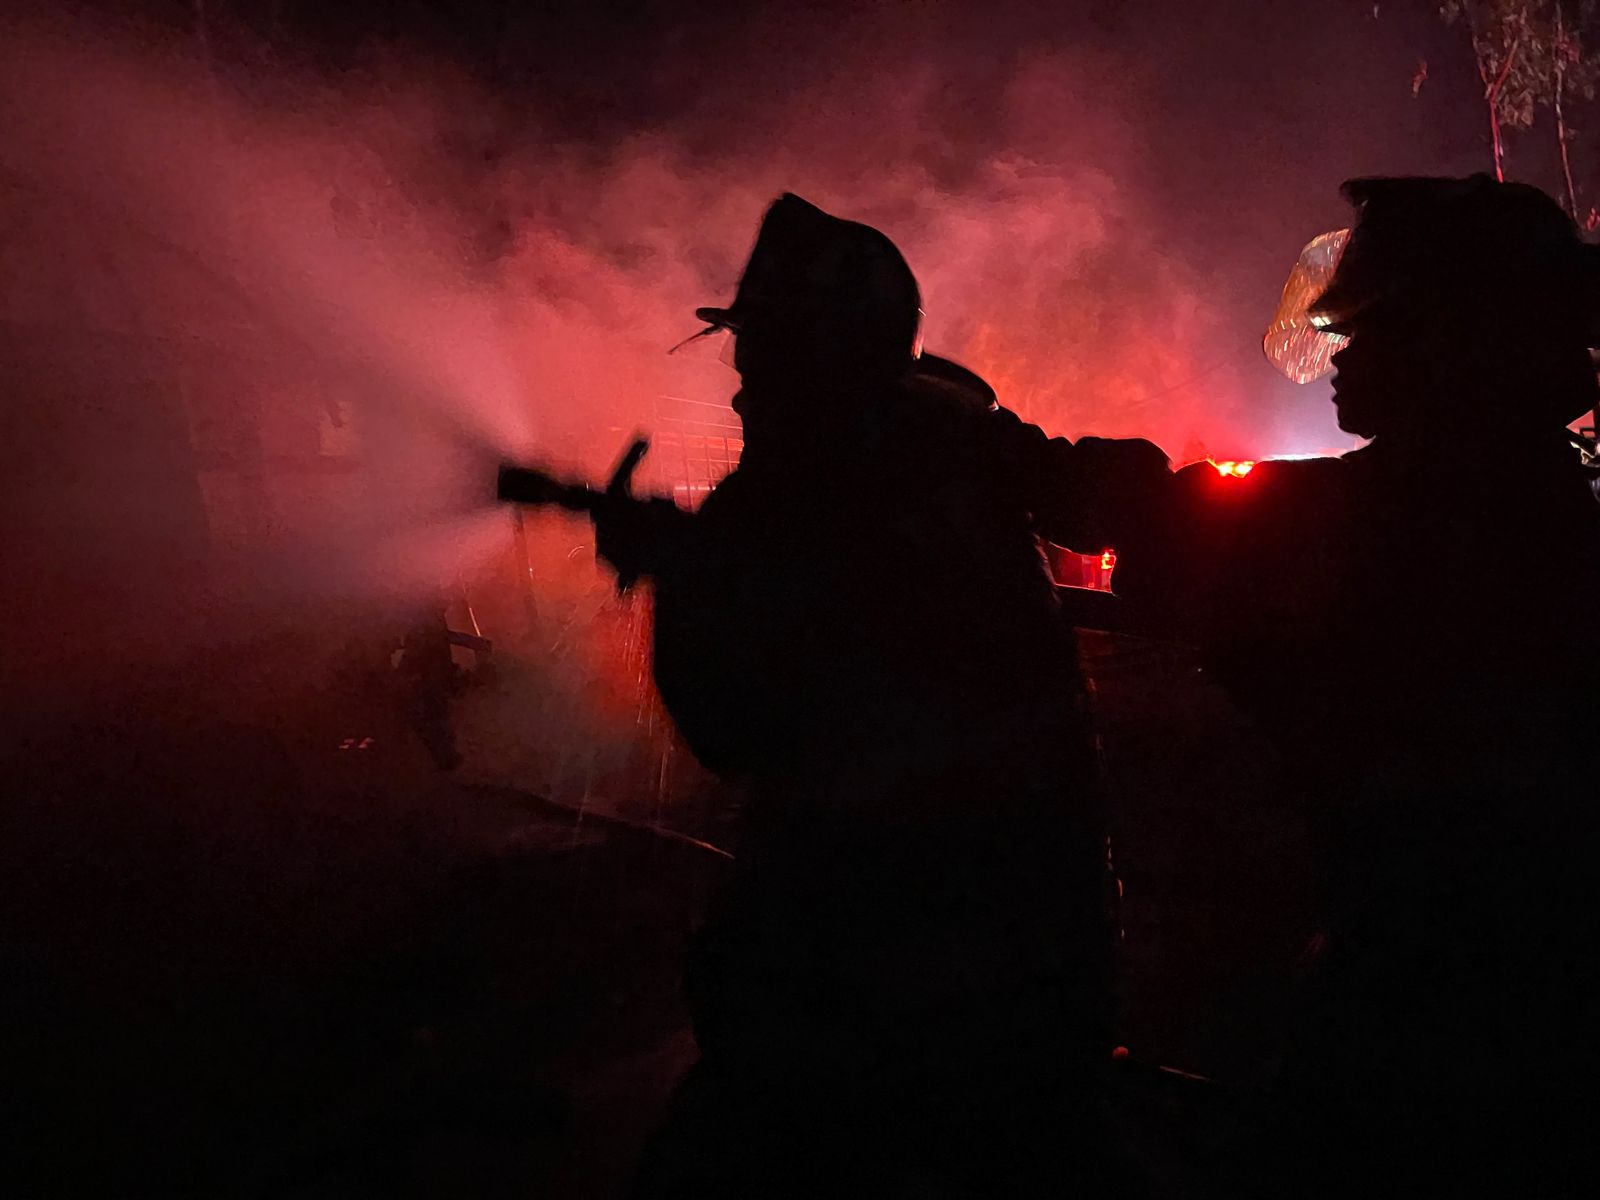 Bomberos Voluntarios y Municipales Departamentales trabajaron para sofocar un incendio que ocurrió en un inmueble en el kilómetro 40 de la ruta al Atlántico. Foto Bomberos Voluntarios.